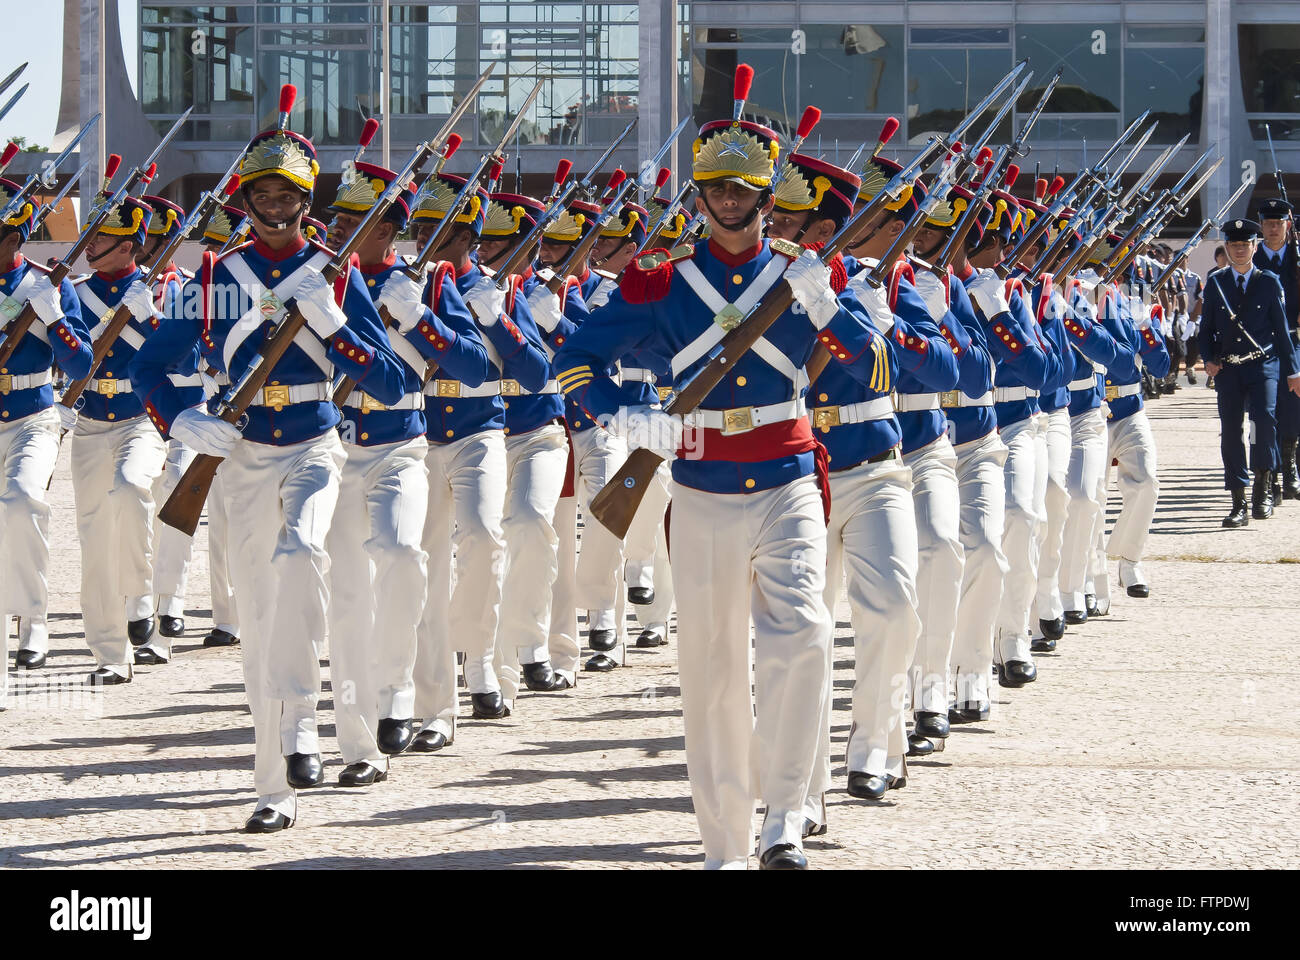 Le bataillon de la Garde présidentielle Duc de Caxias sur la place des trois pouvoirs Banque D'Images